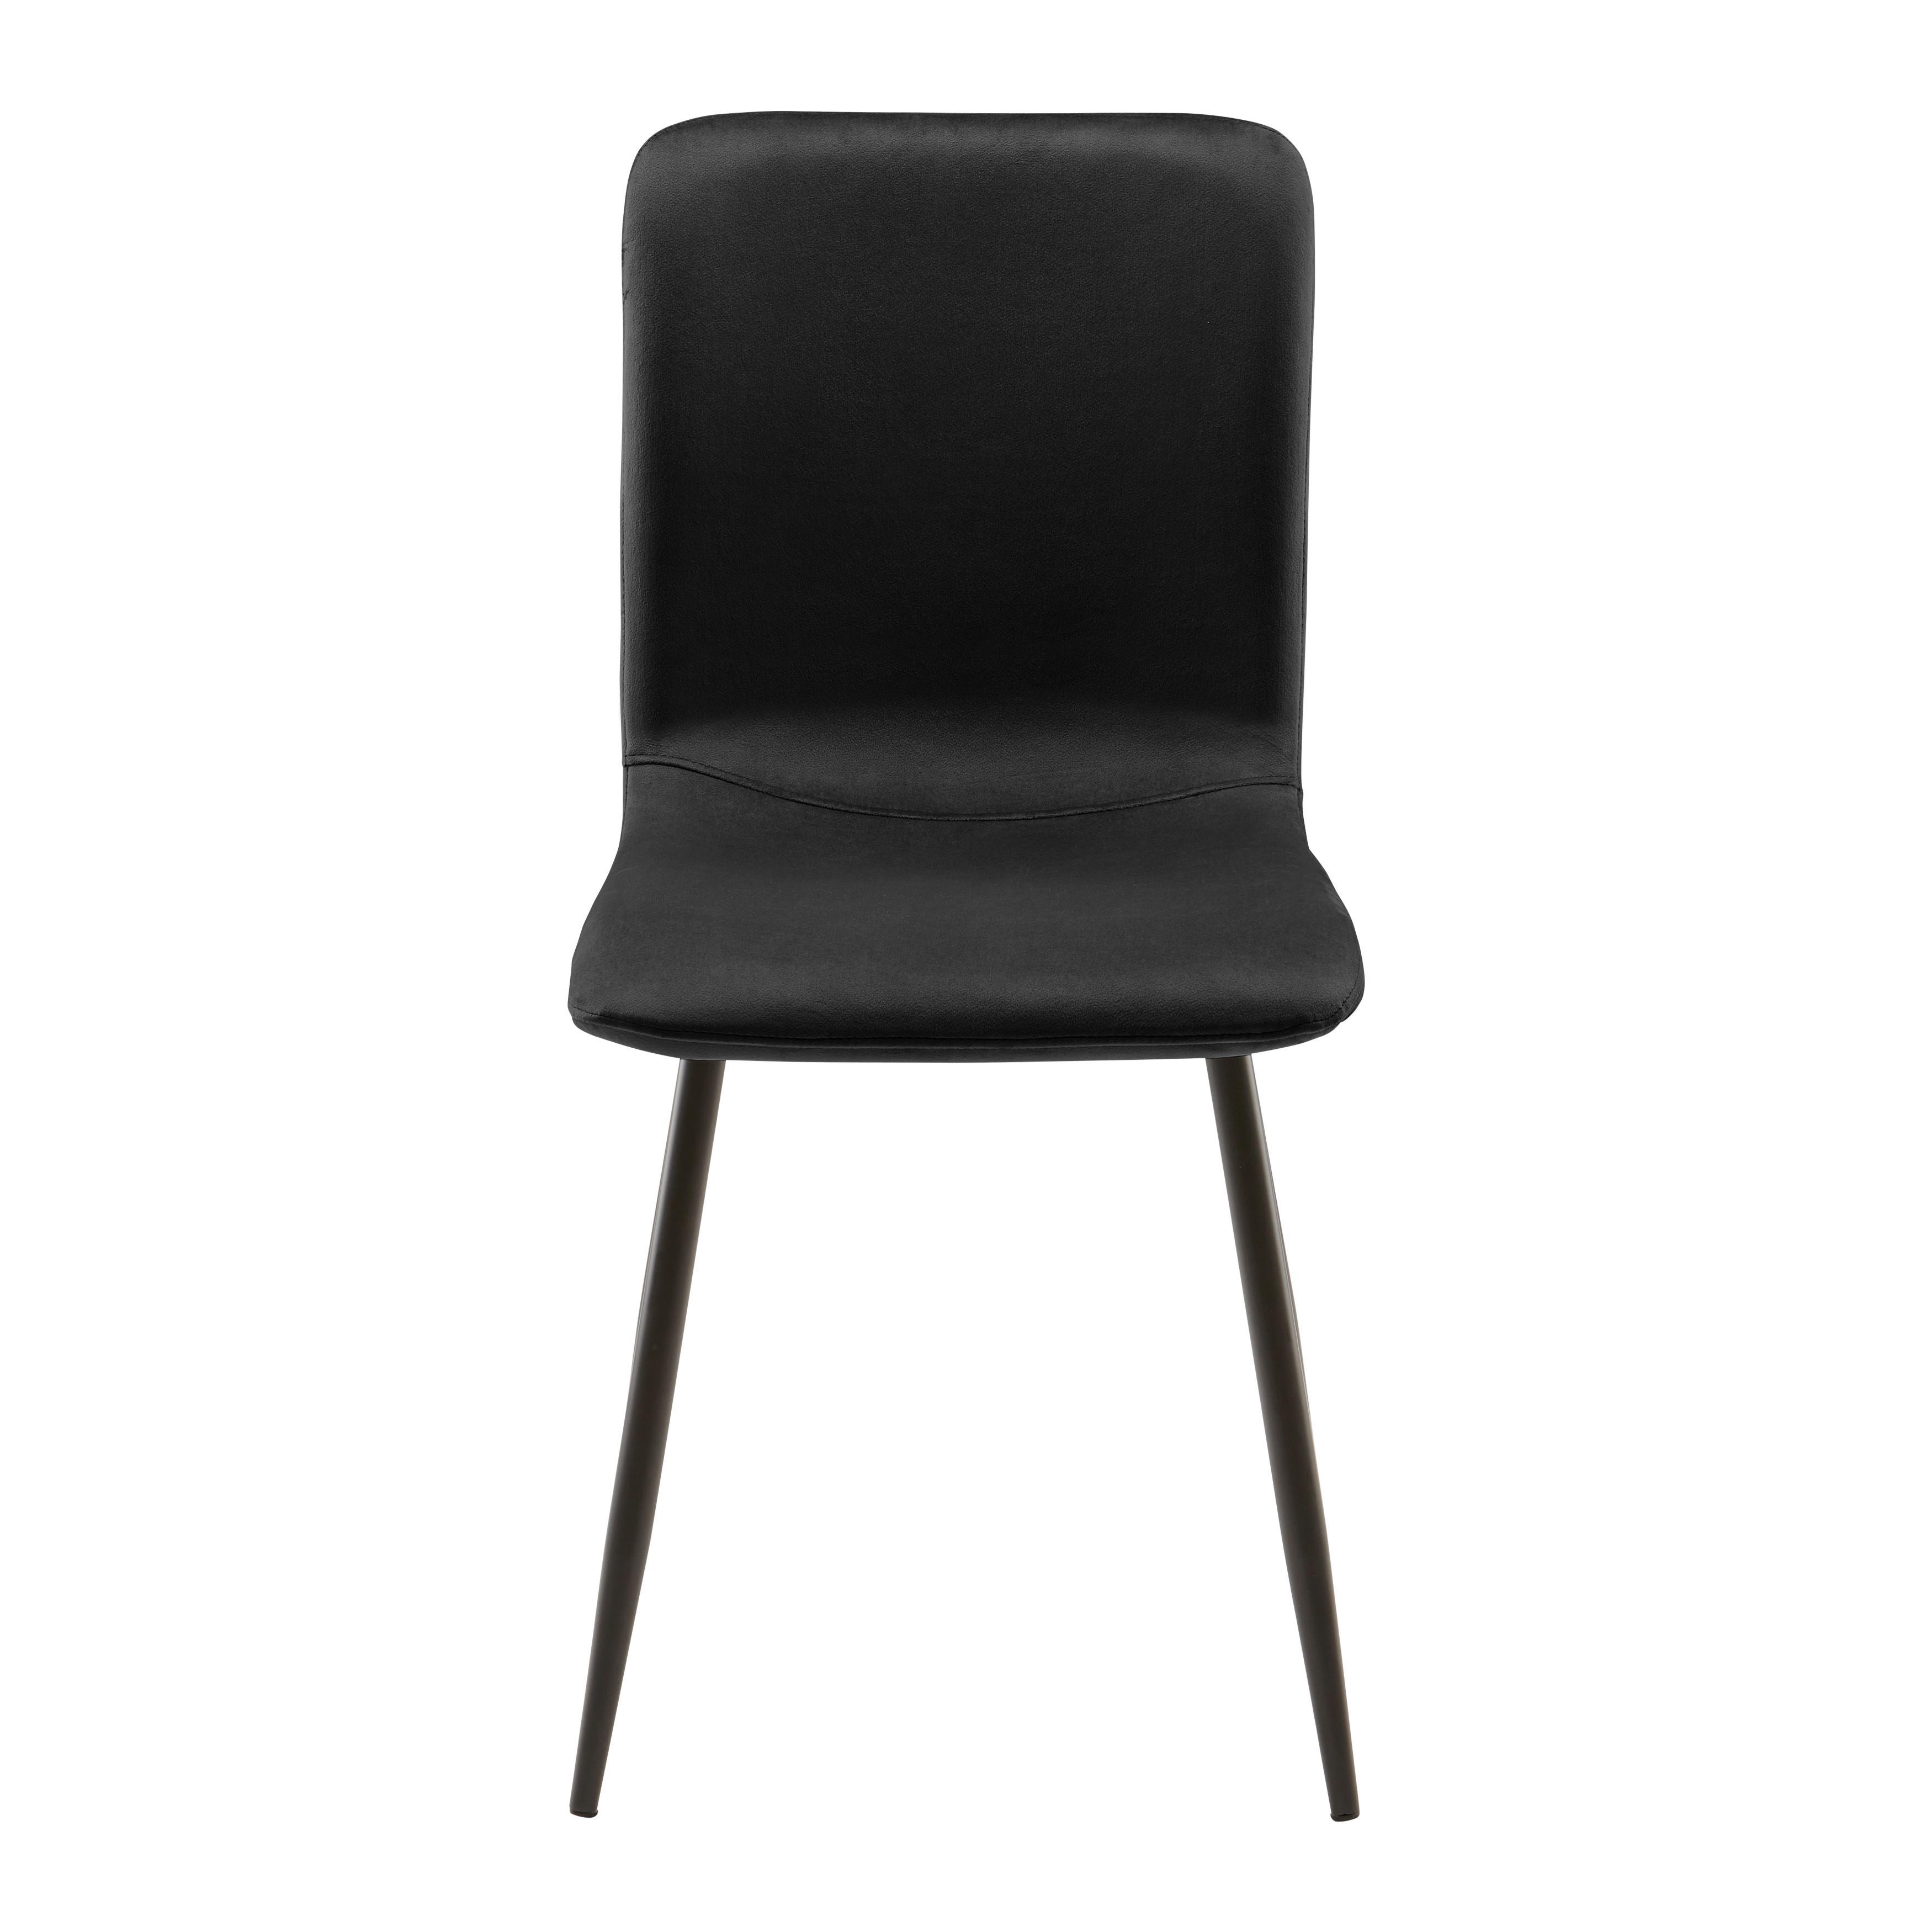 Jídelní Židle Elif Černá - černá/tmavě šedá, Moderní, kov/textil (43/86/55cm) - P & B